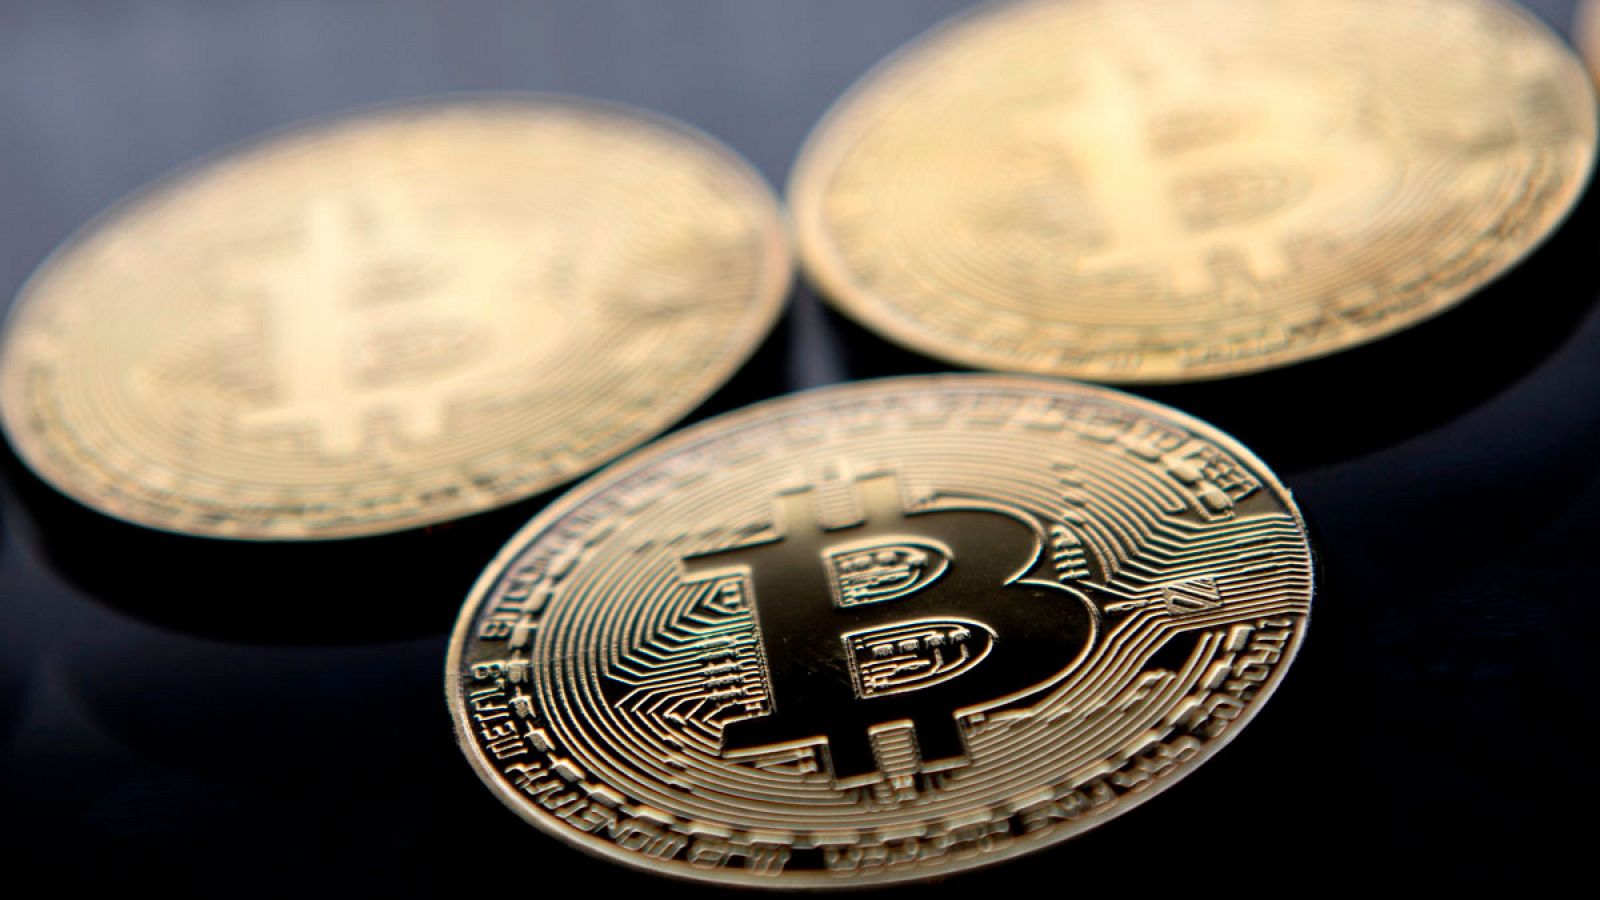 Monedas sin valor que representan bitcoins